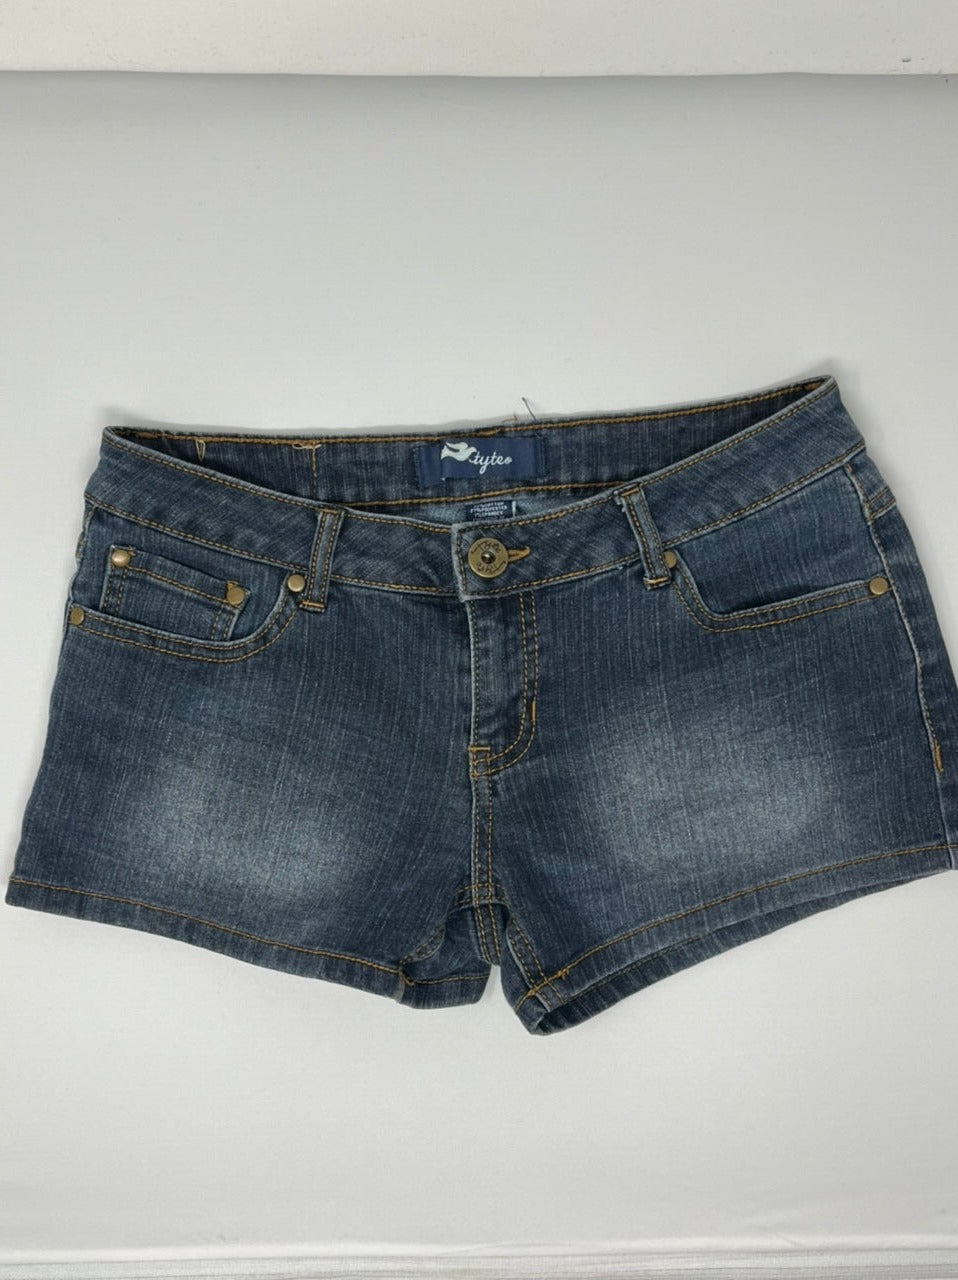 Styte Jean Shorts, size 7  #3509